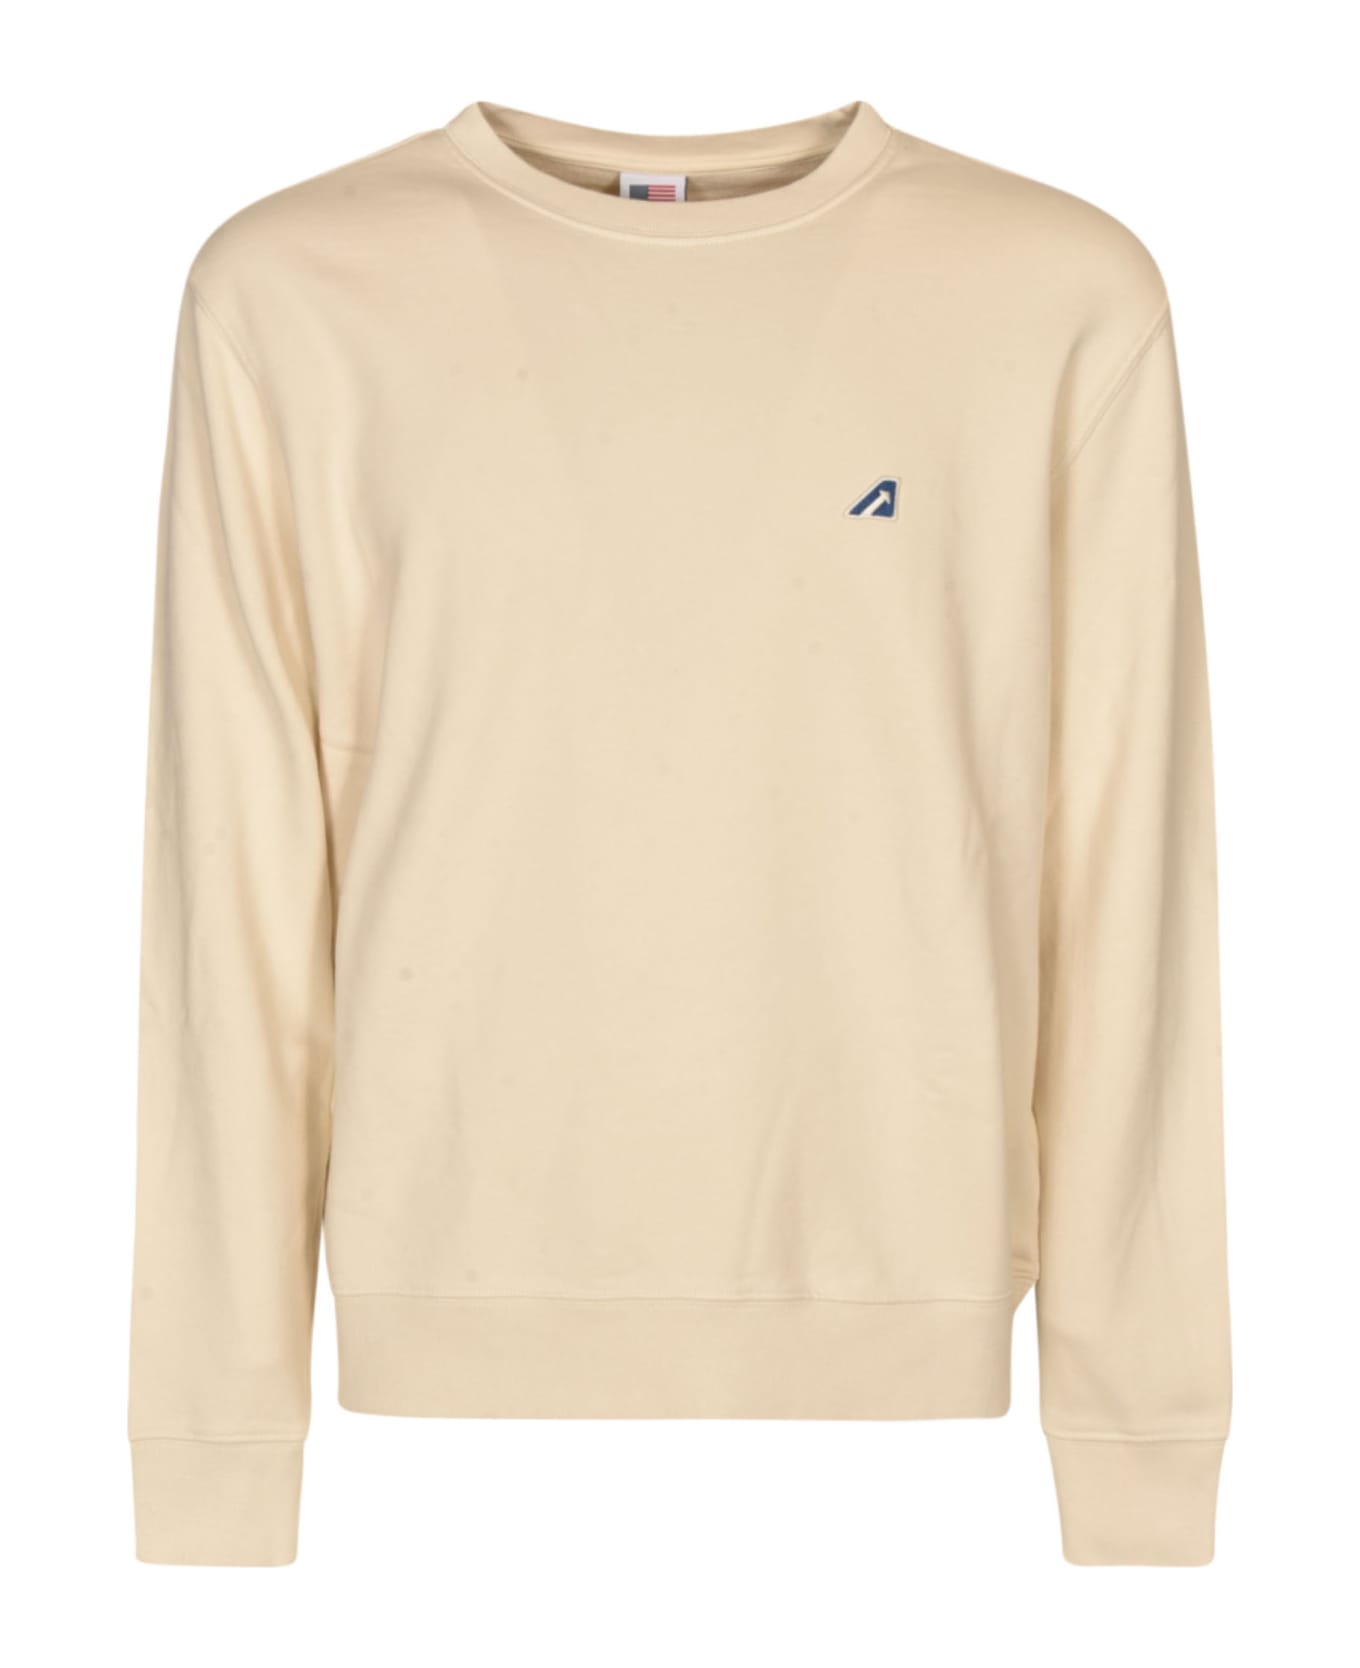 Autry Tennis Academy Sweatshirt - White フリース